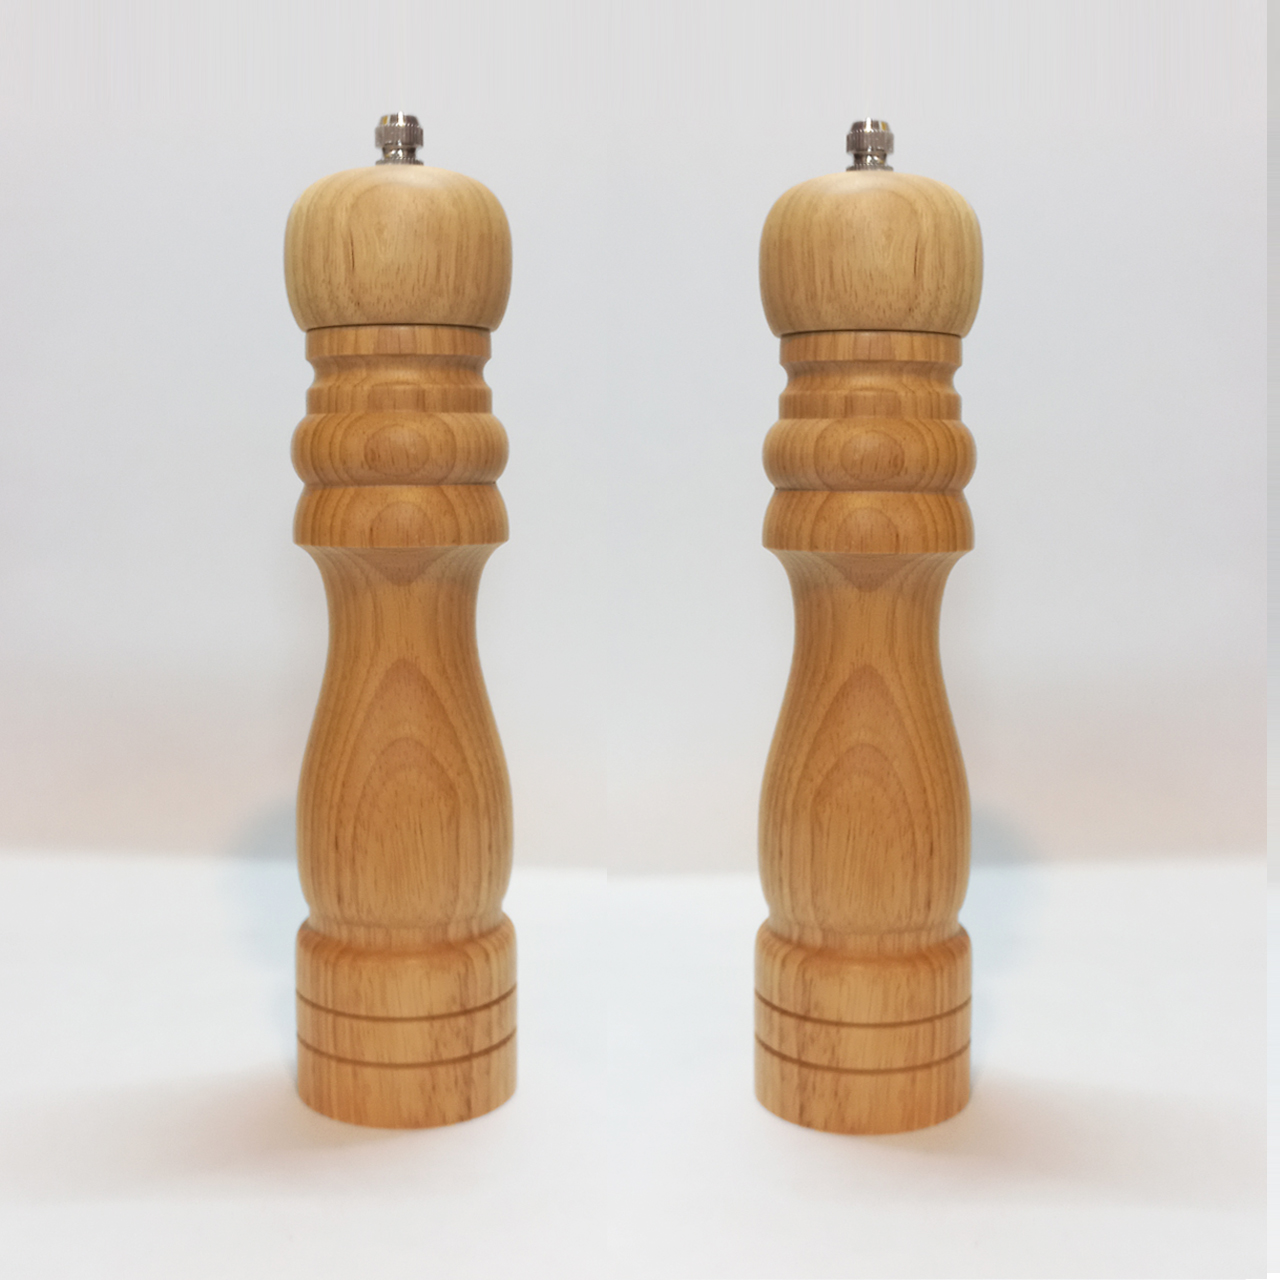 فلفل ساب و نمک ساب مدل چوبی Tall مجموعه 2 عددی